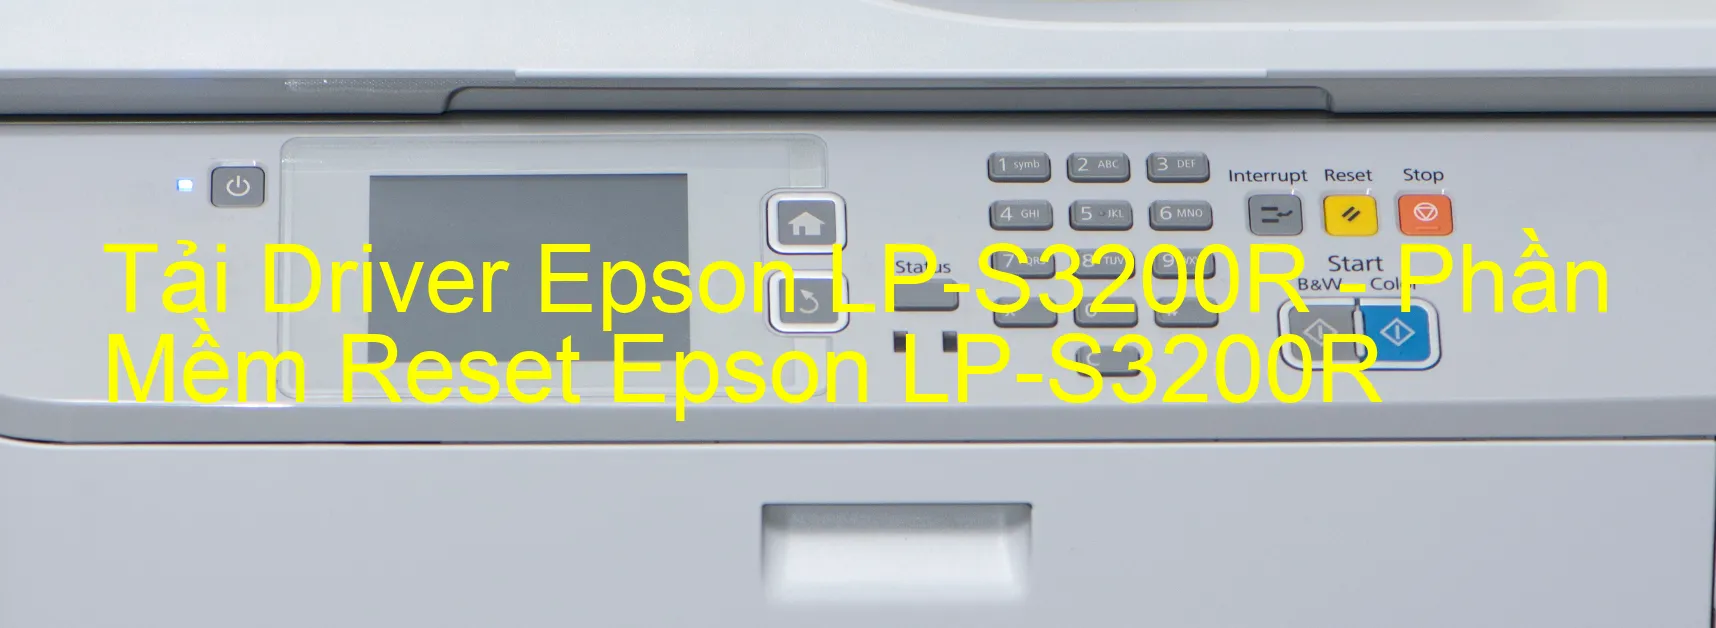 Driver Epson LP-S3200R, Phần Mềm Reset Epson LP-S3200R